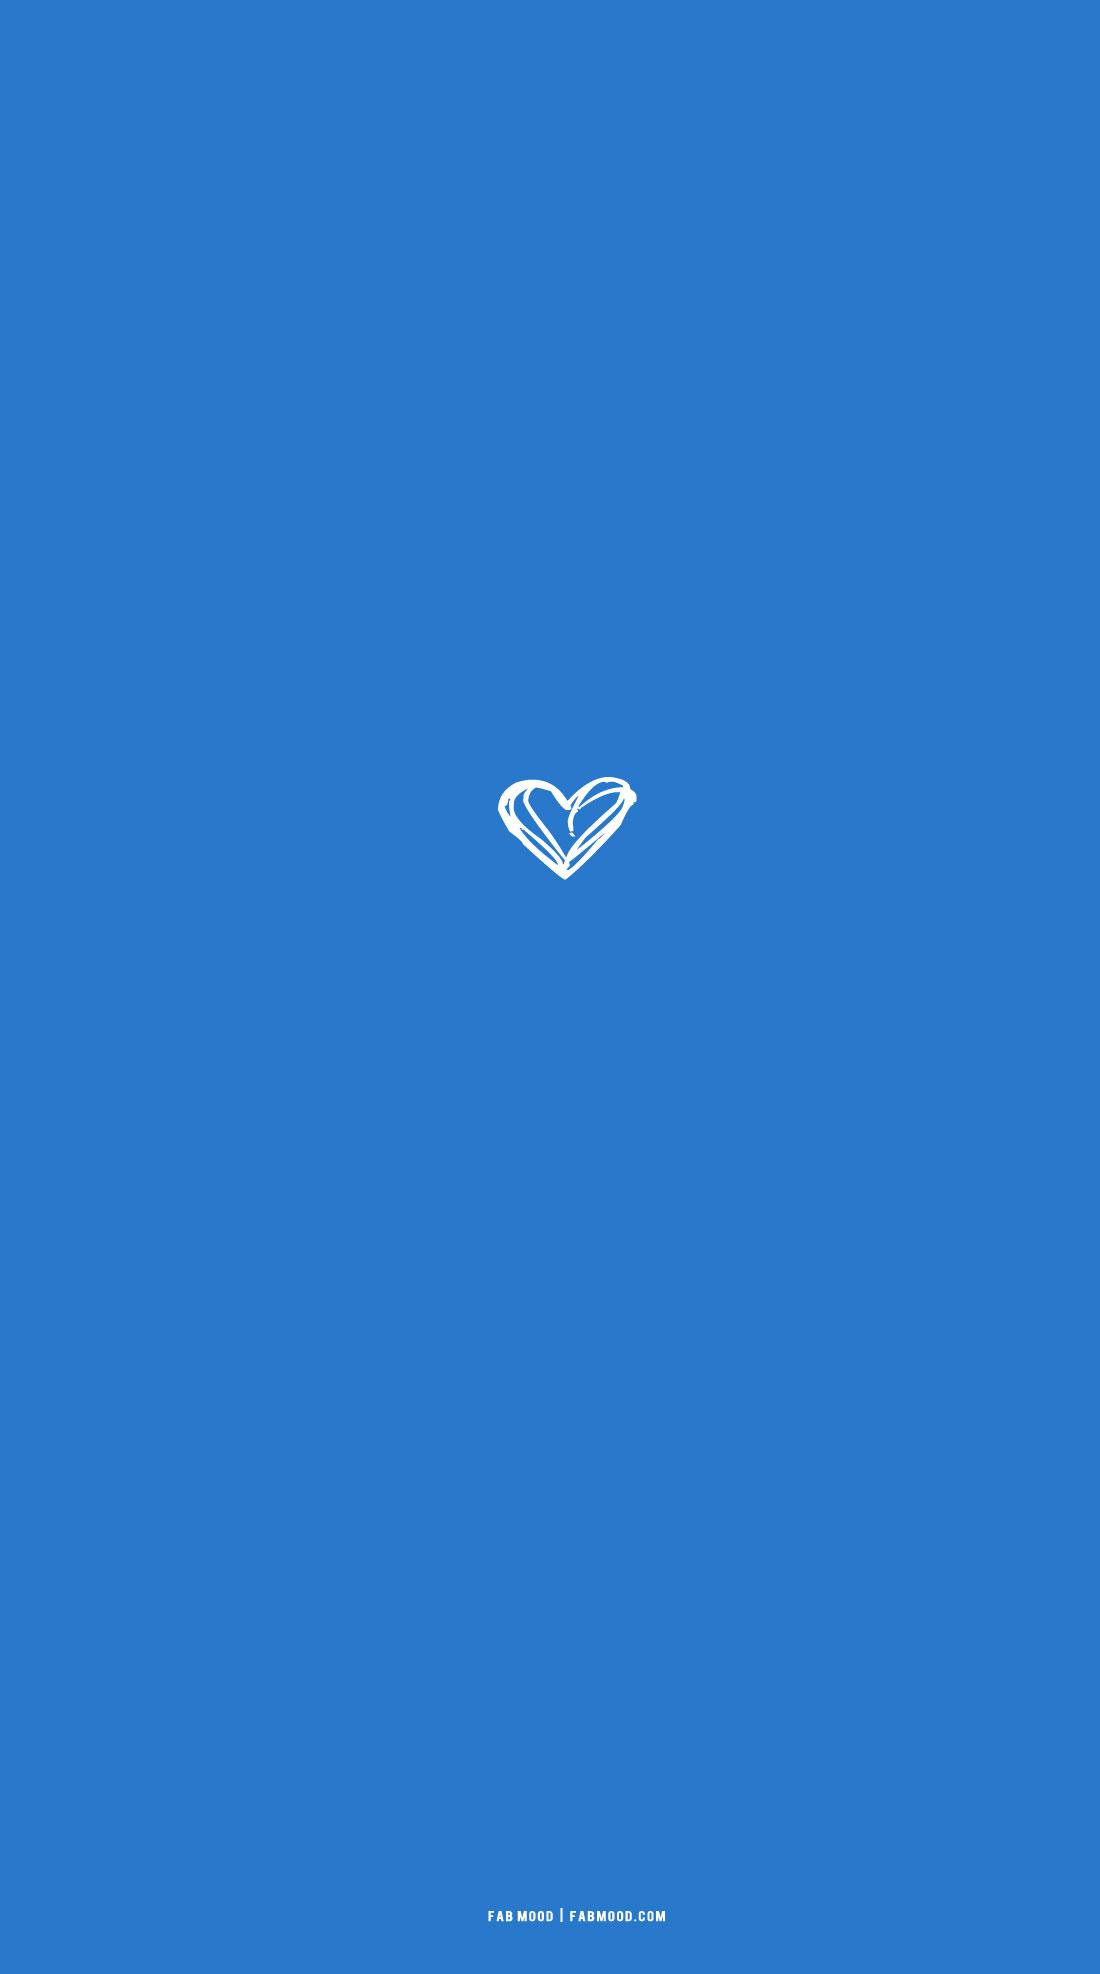 Azure Blue Wallpaper For Phone Messy Heart Illustration